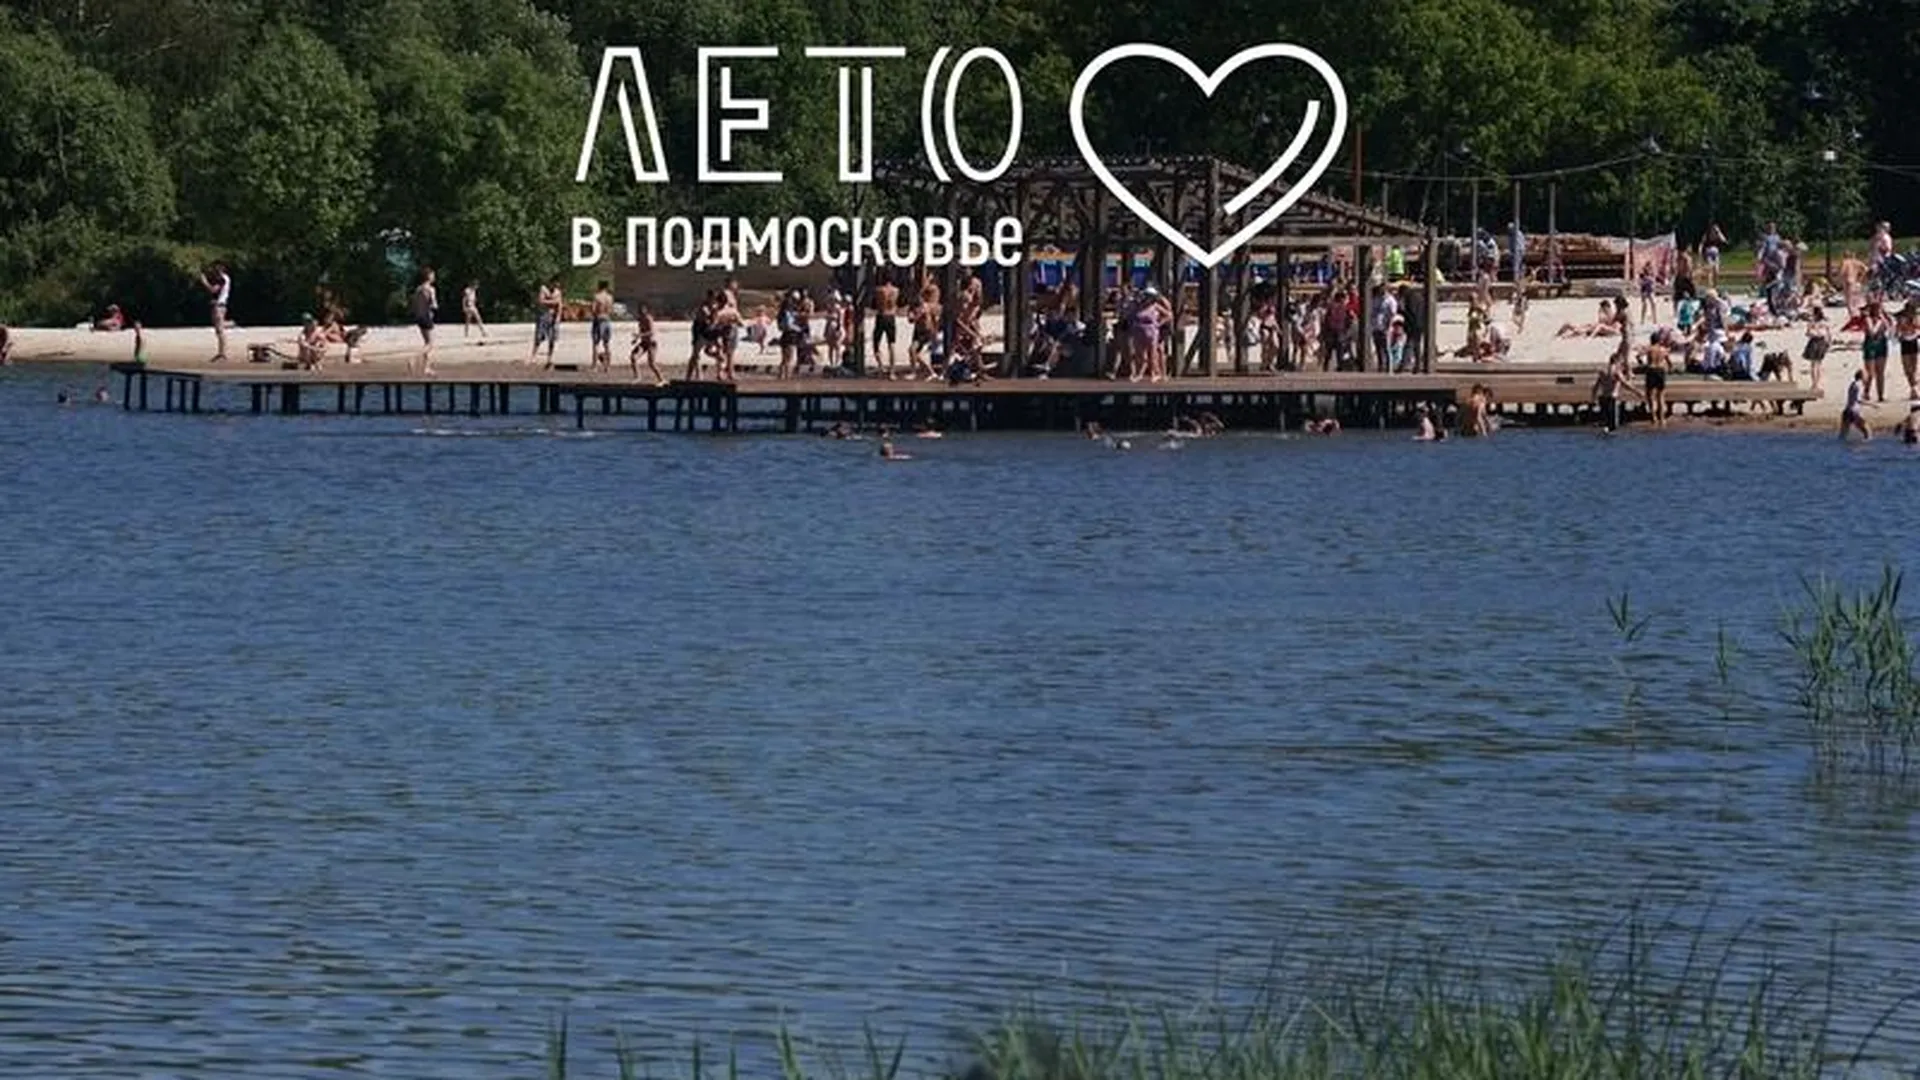 Пляж есть, «скалы» будут: Почему парк в Солнечногорске может стать одним из самых популярных в Подмосковье 